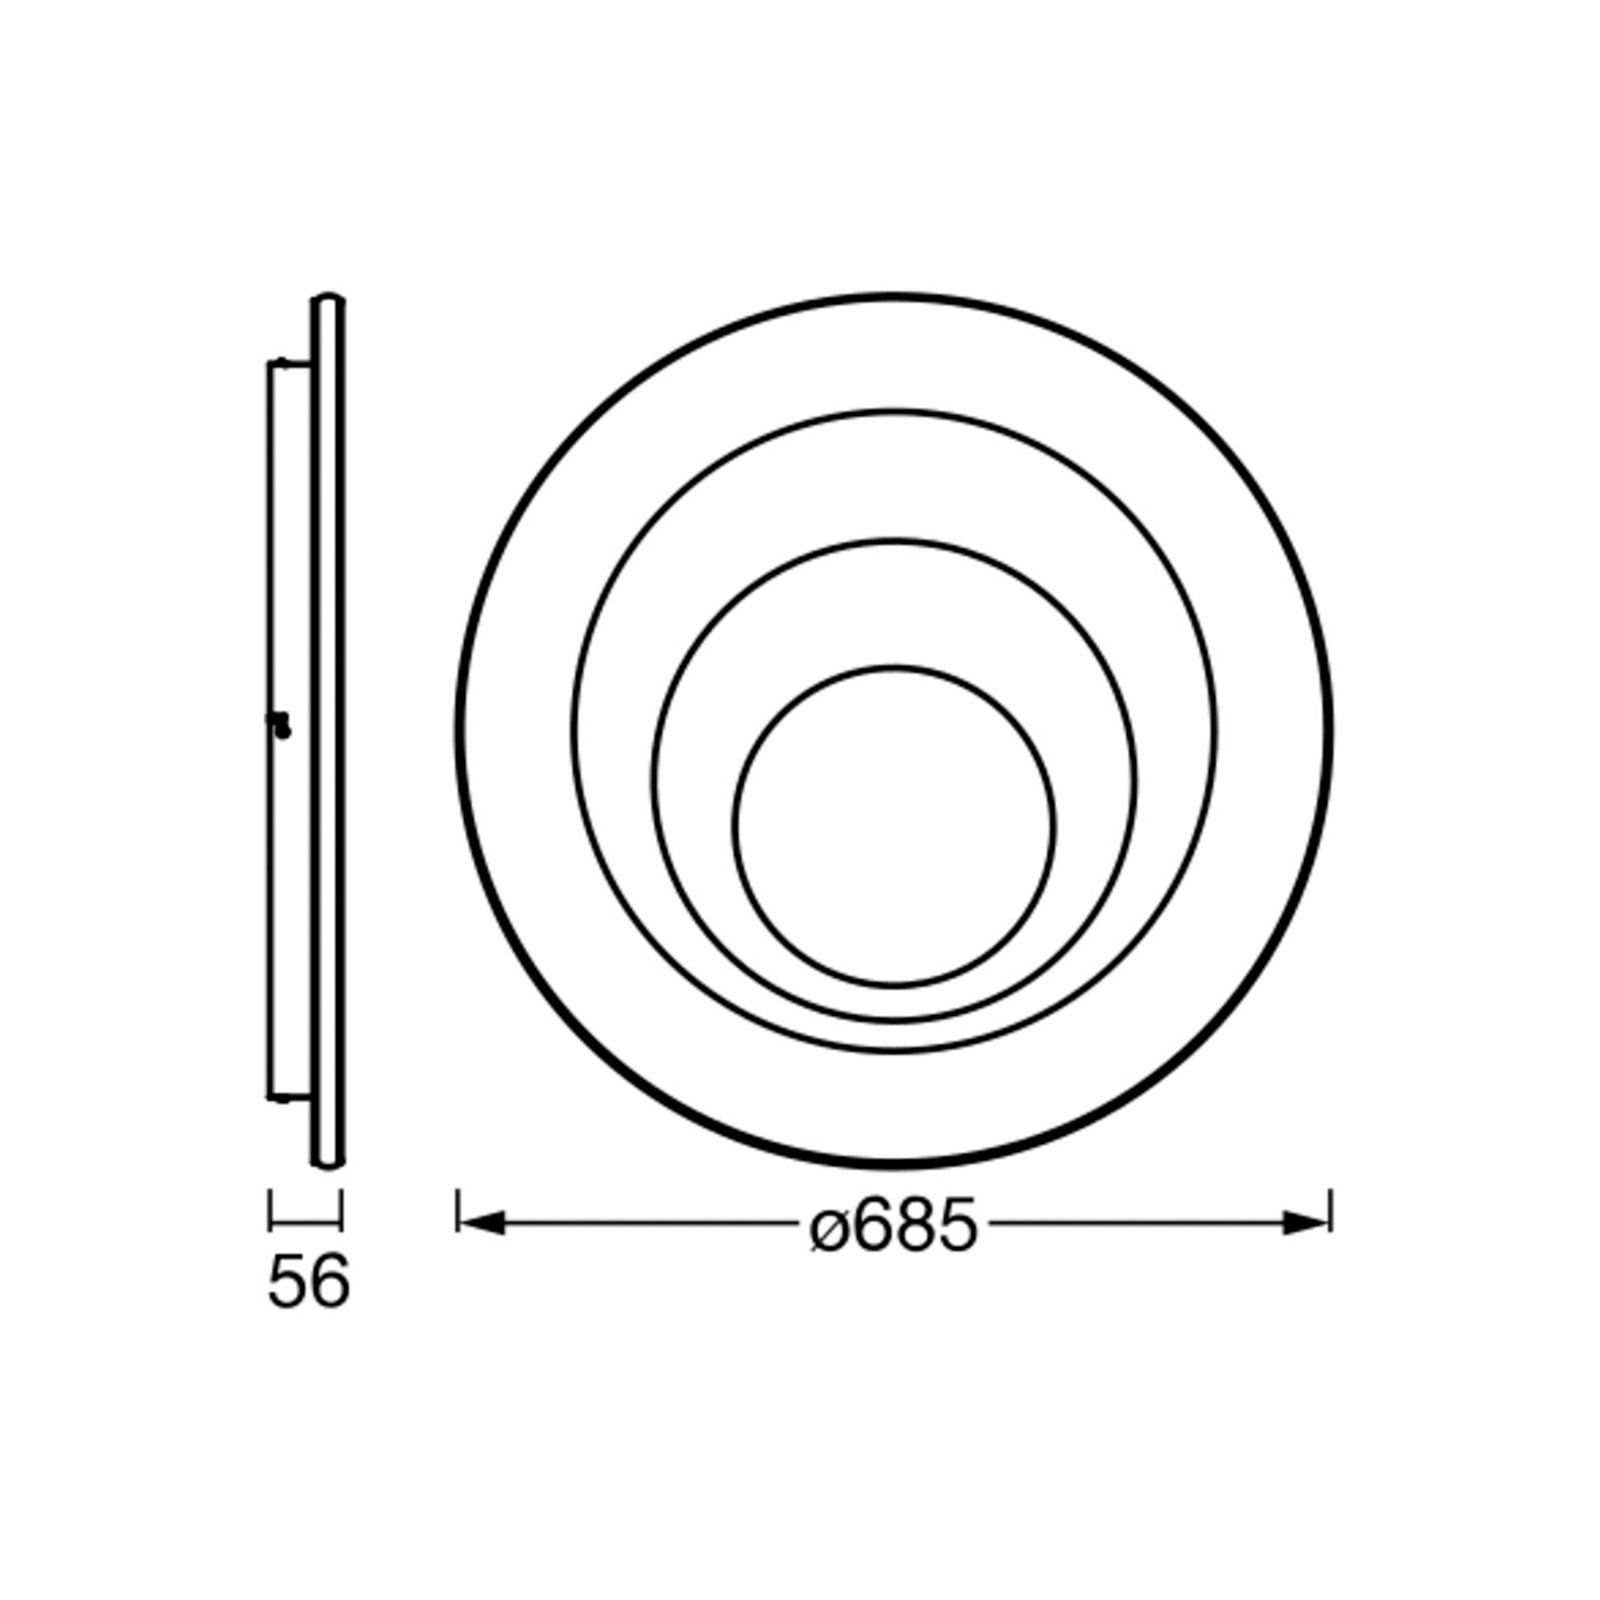 LEDVANCE Orbis Spiral Round plafonnier Ø68,5cm